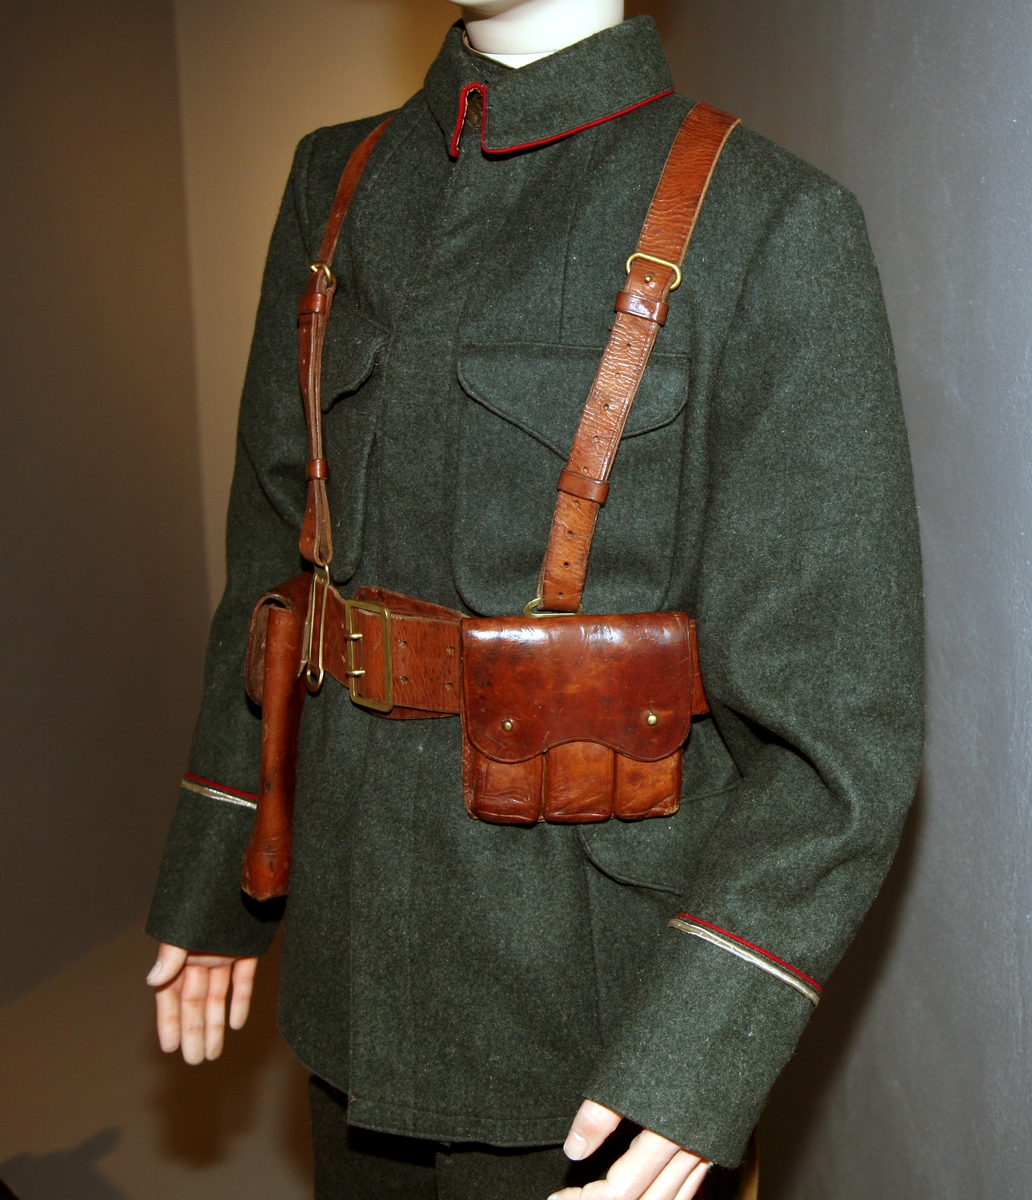 Jakke, felt, norsk M/1914. 
Grad for fahnjunker. 	
Stemplet IR 5 1939. 
I utstilling på dukke med soldat. 